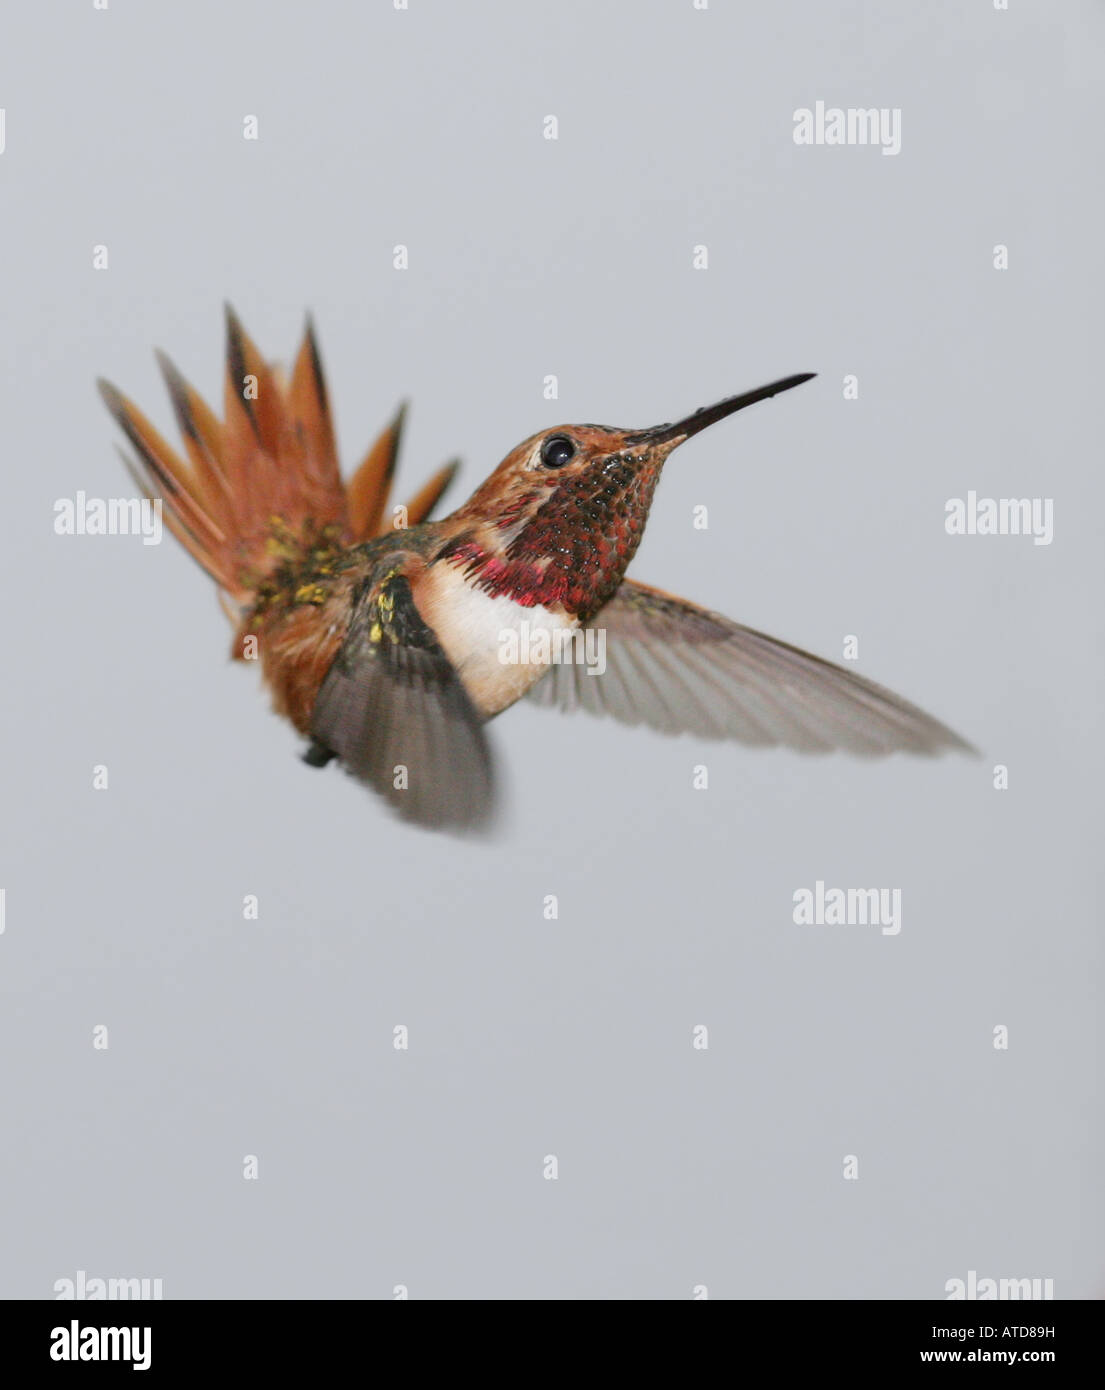 Allen hummingbird in una posizione di immersione, con le ali in avanti, la testa e la coda di piume fino Foto Stock